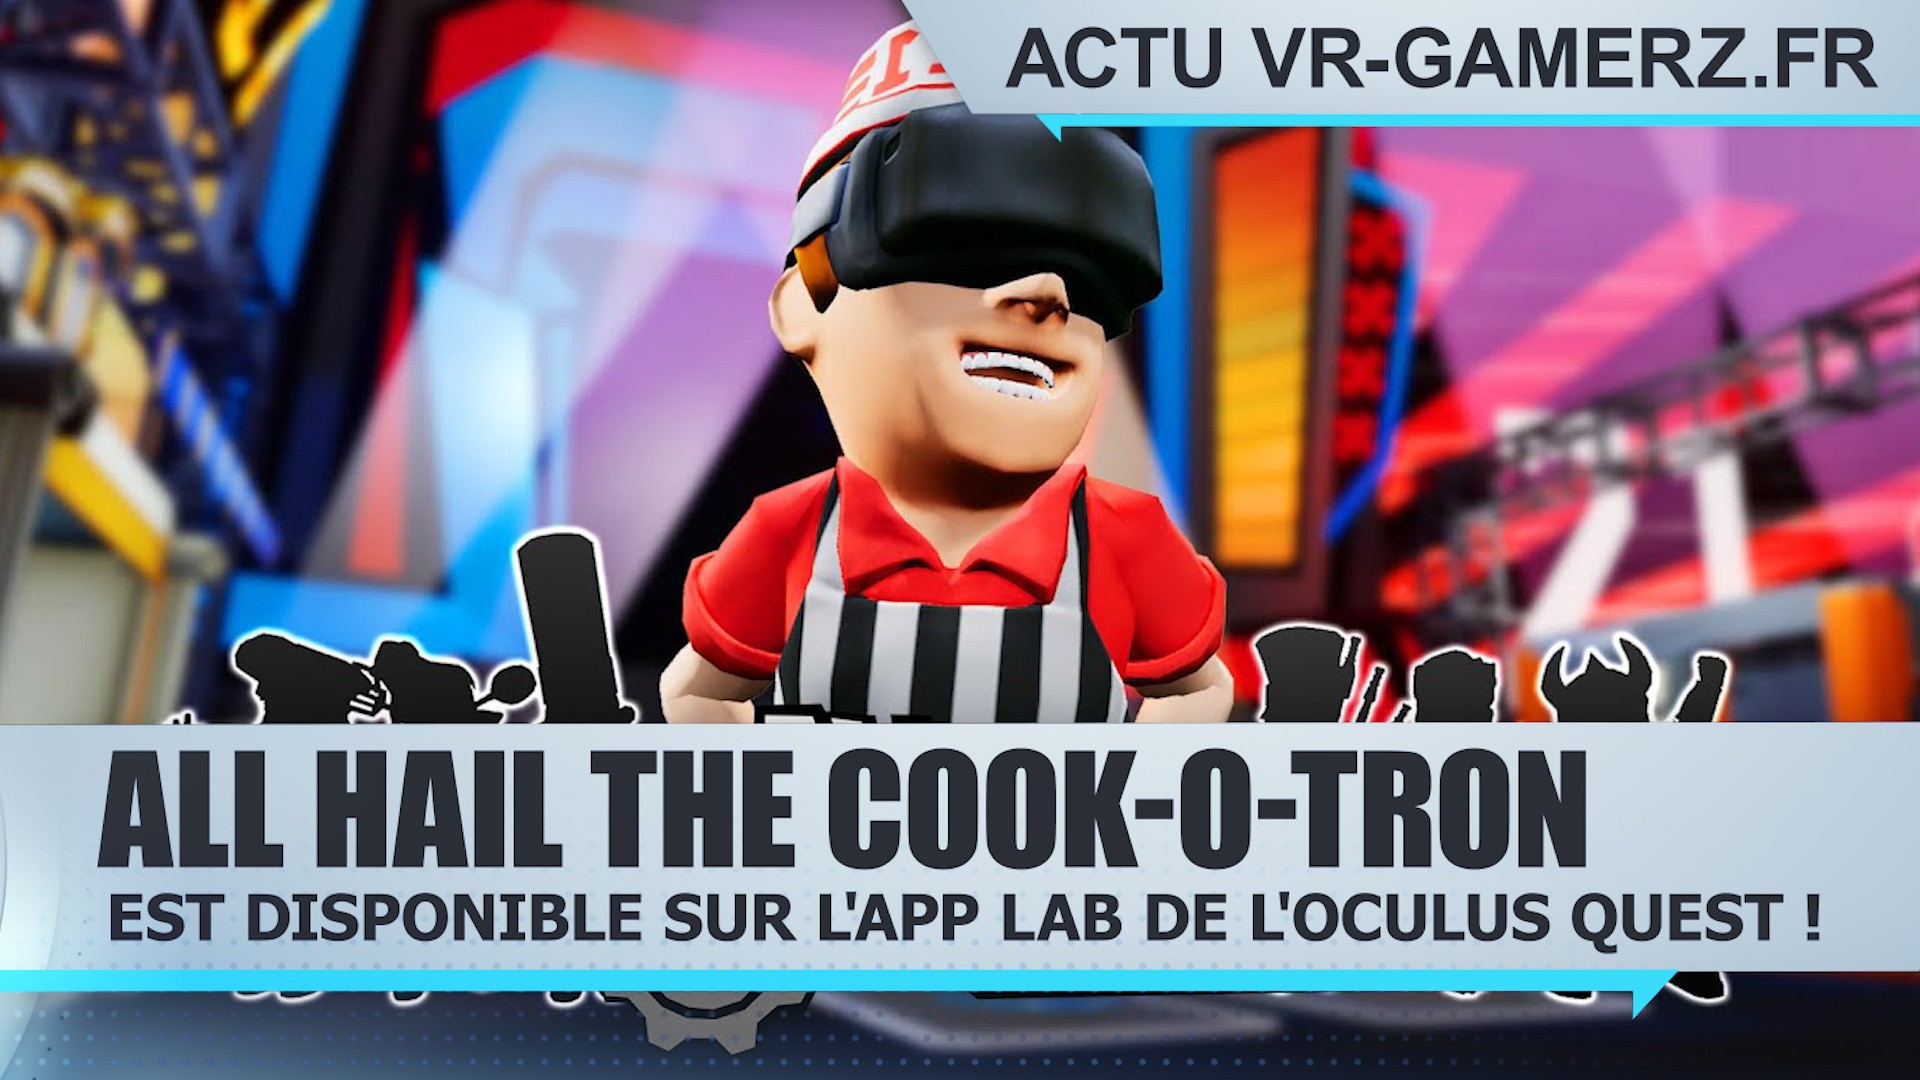 All Hail the Cook-o-tron est disponible sur l’App lab de l’Oculus quest !